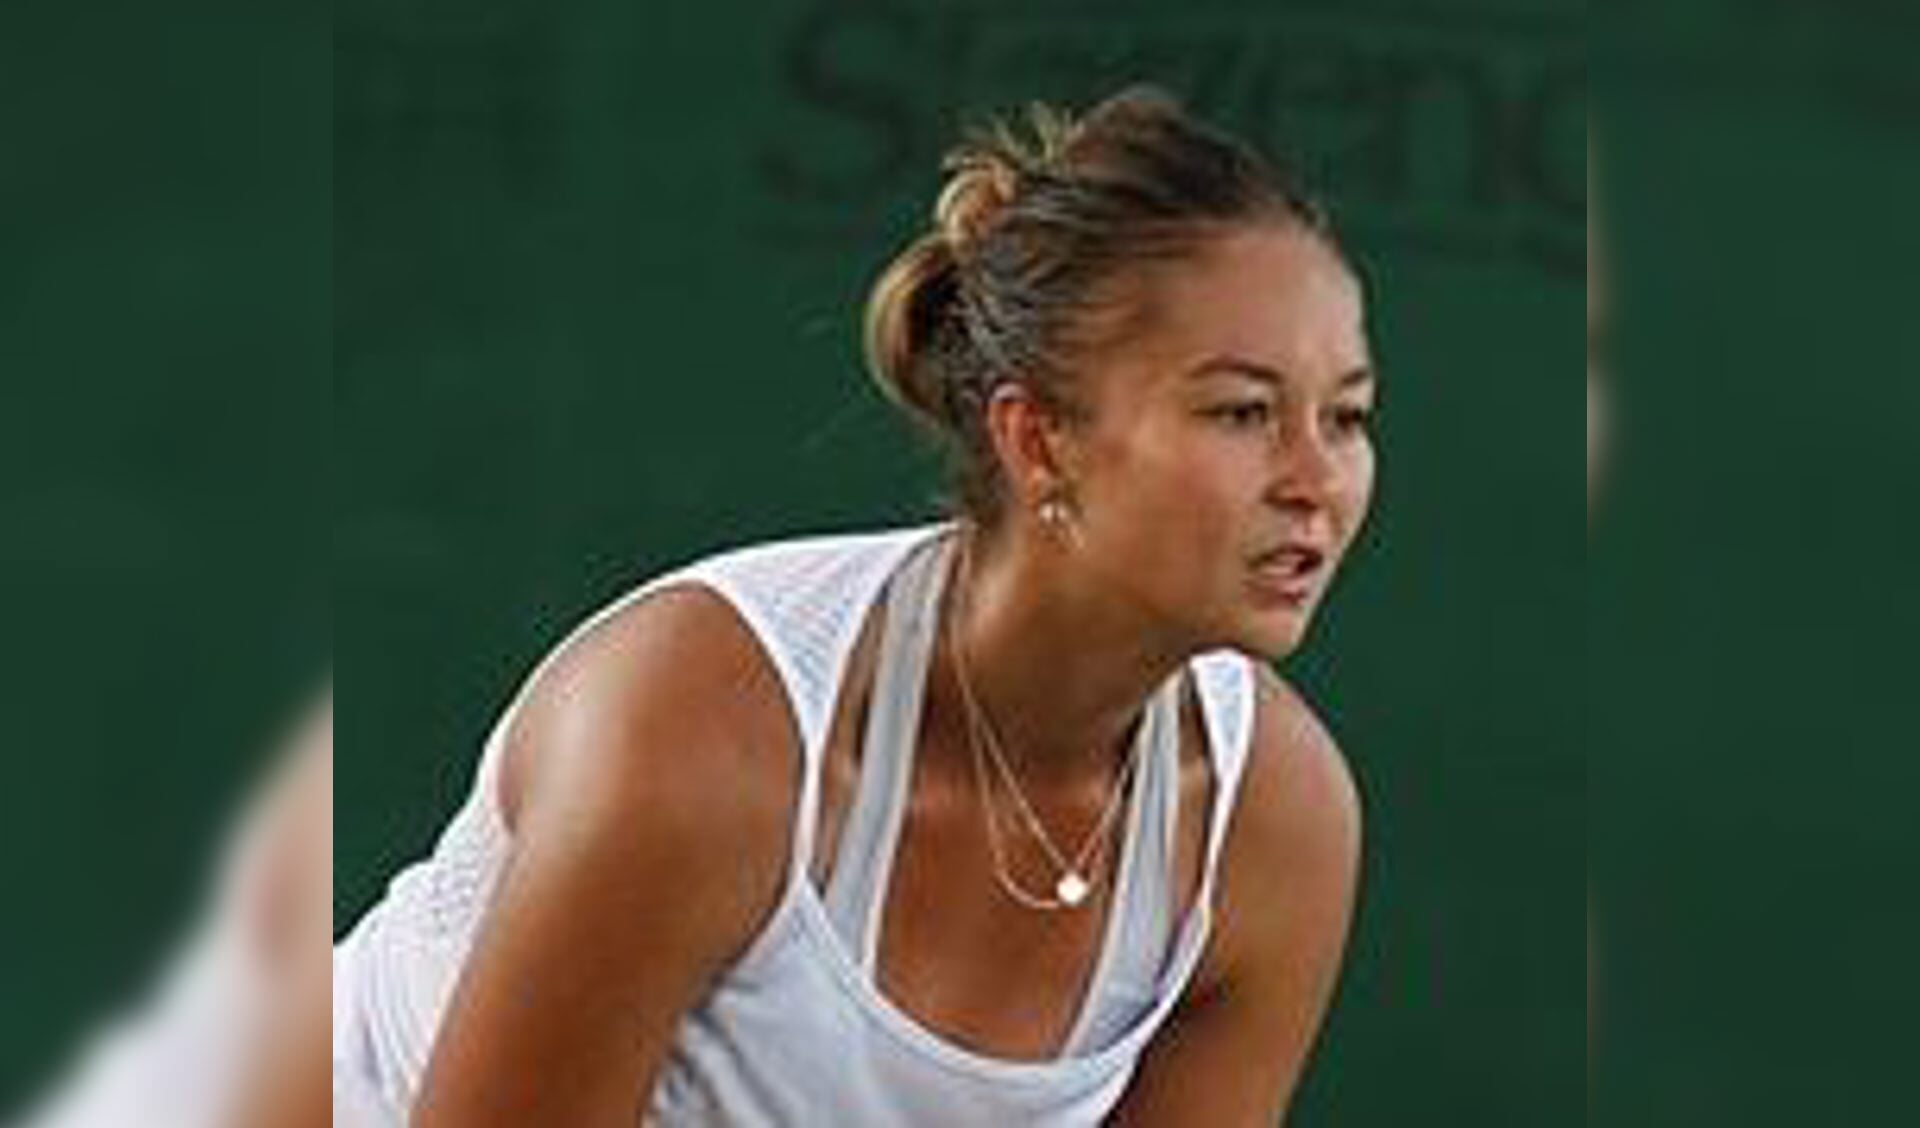 Blinkova en rug houden Kerkhove uit hoofdschema Chinees WTA